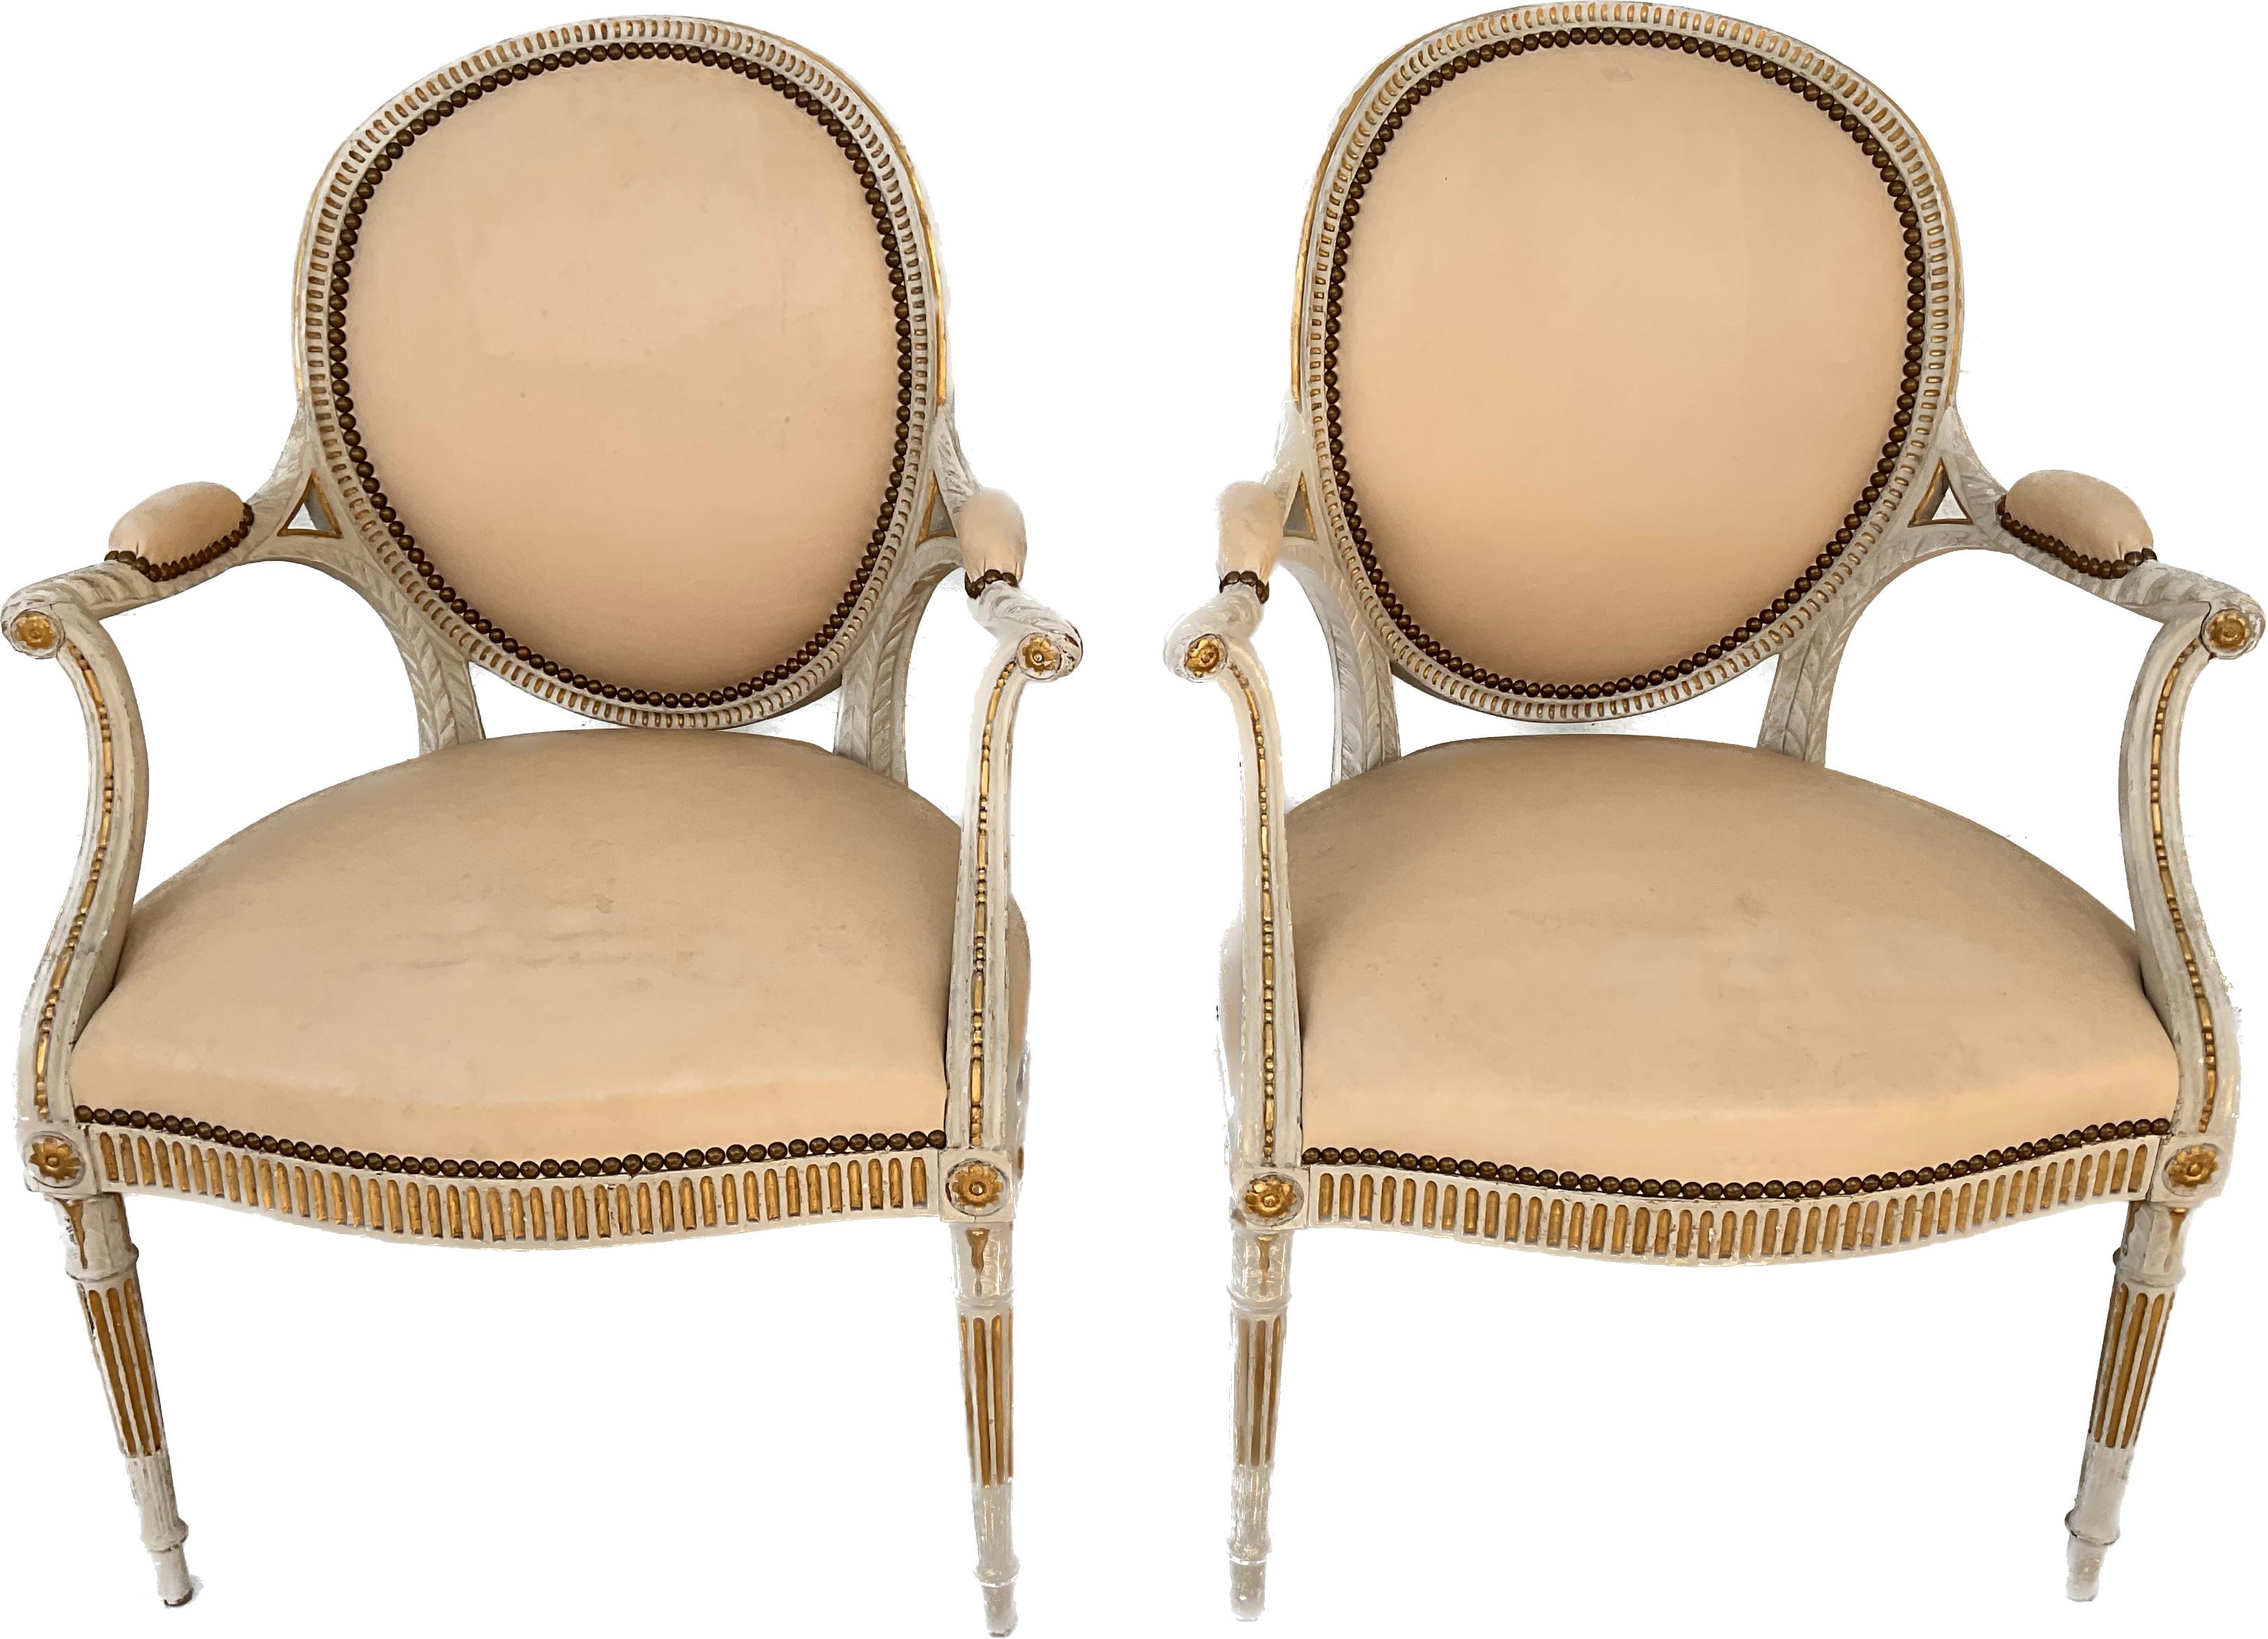 Raffiniertes Paar bemalter Sessel im George-III-Stil im Adams-Geschmack. Eleganter Stil in heller Cremefarbe, geschnitztes lackiertes Holz,  mit durchgehender Vergoldung und Ösen. Rückenlehne und Sitzfläche sind aus weichem, cremefarbenem Leder